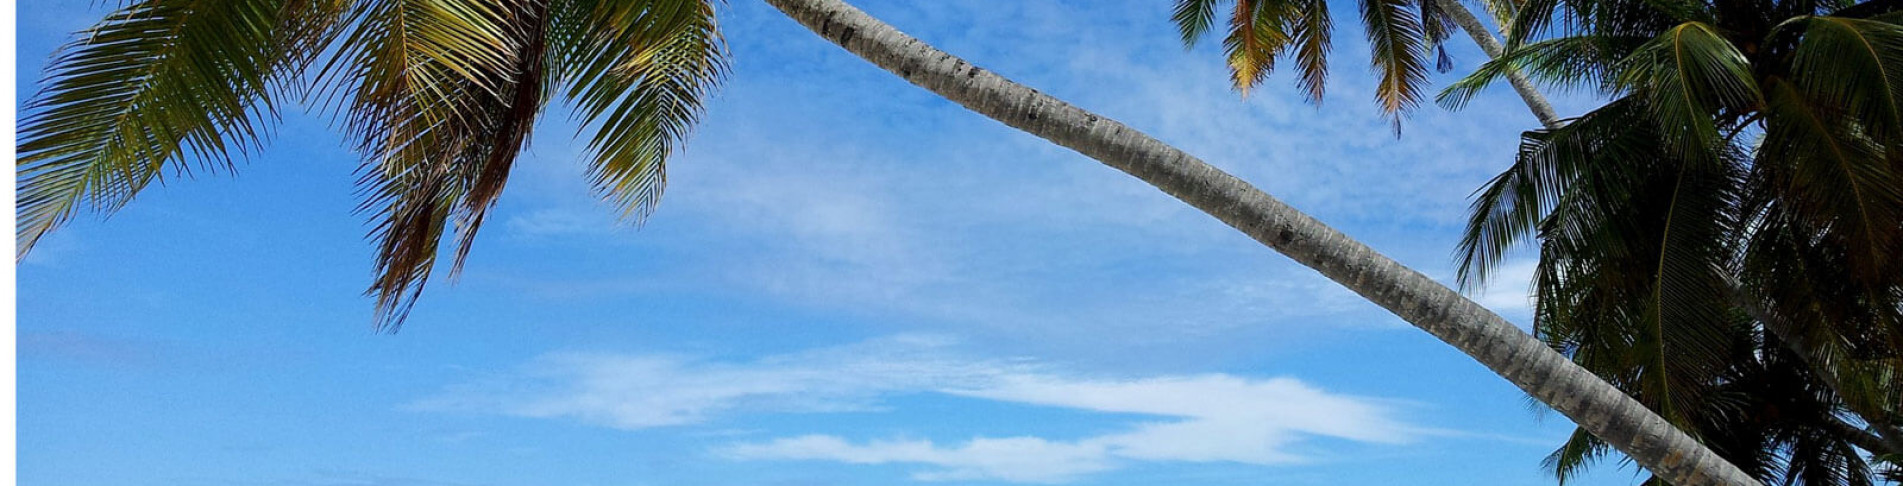 blauen Himmel bei einer Last Minute Kuba Reise genießen